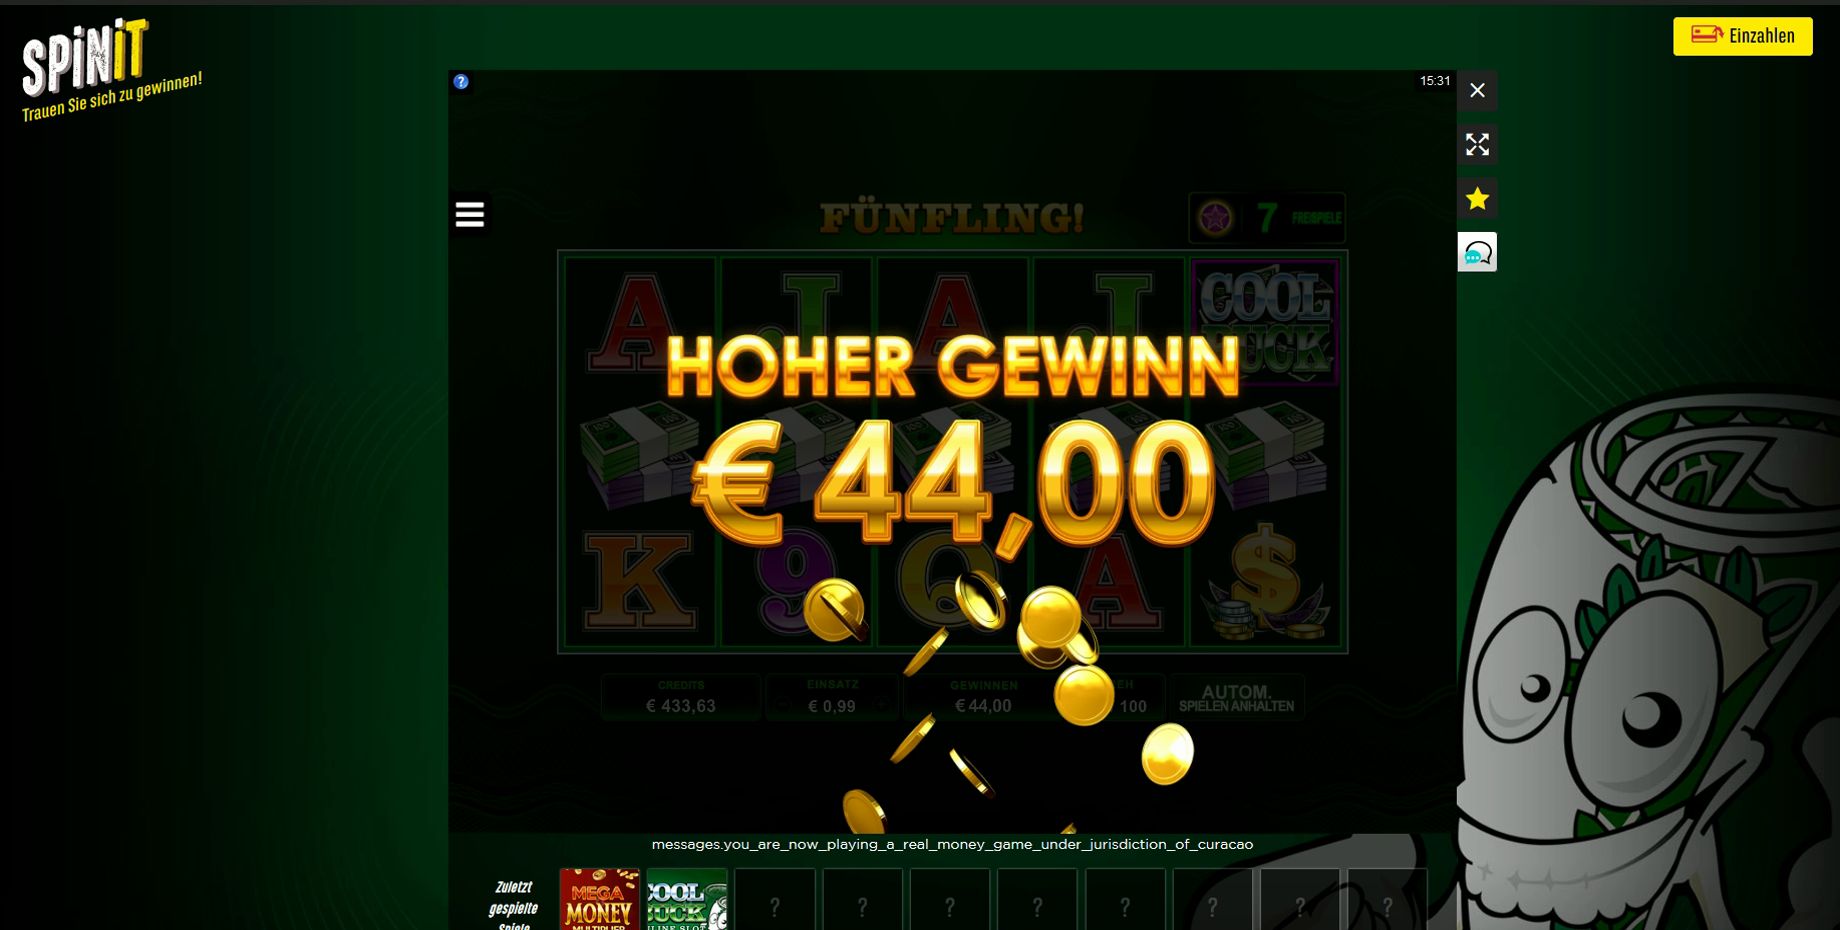 Casino Online Test